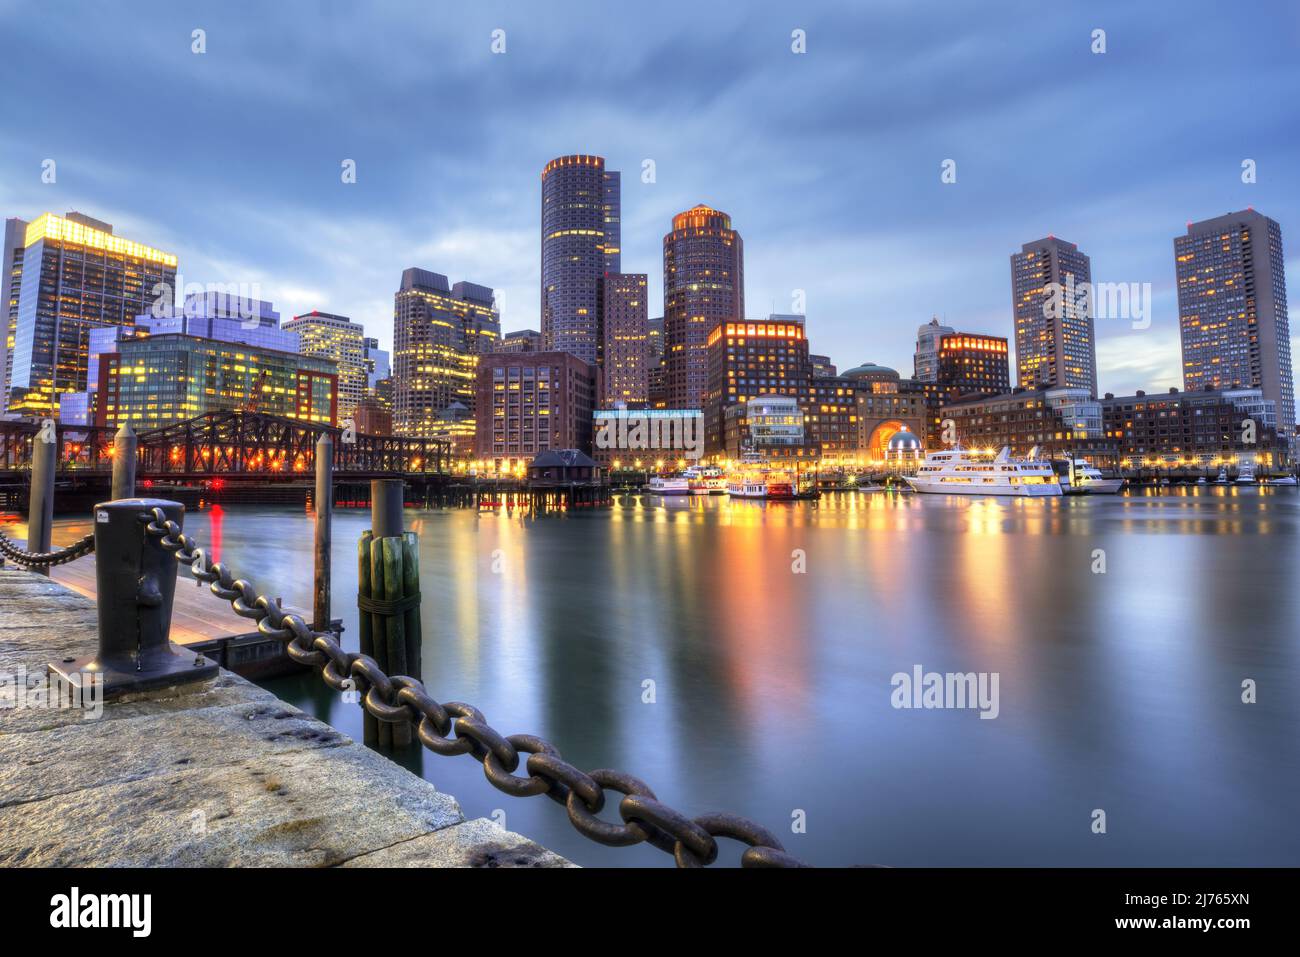 Cityscape photography in Boston Massachusetts. Stock Photo